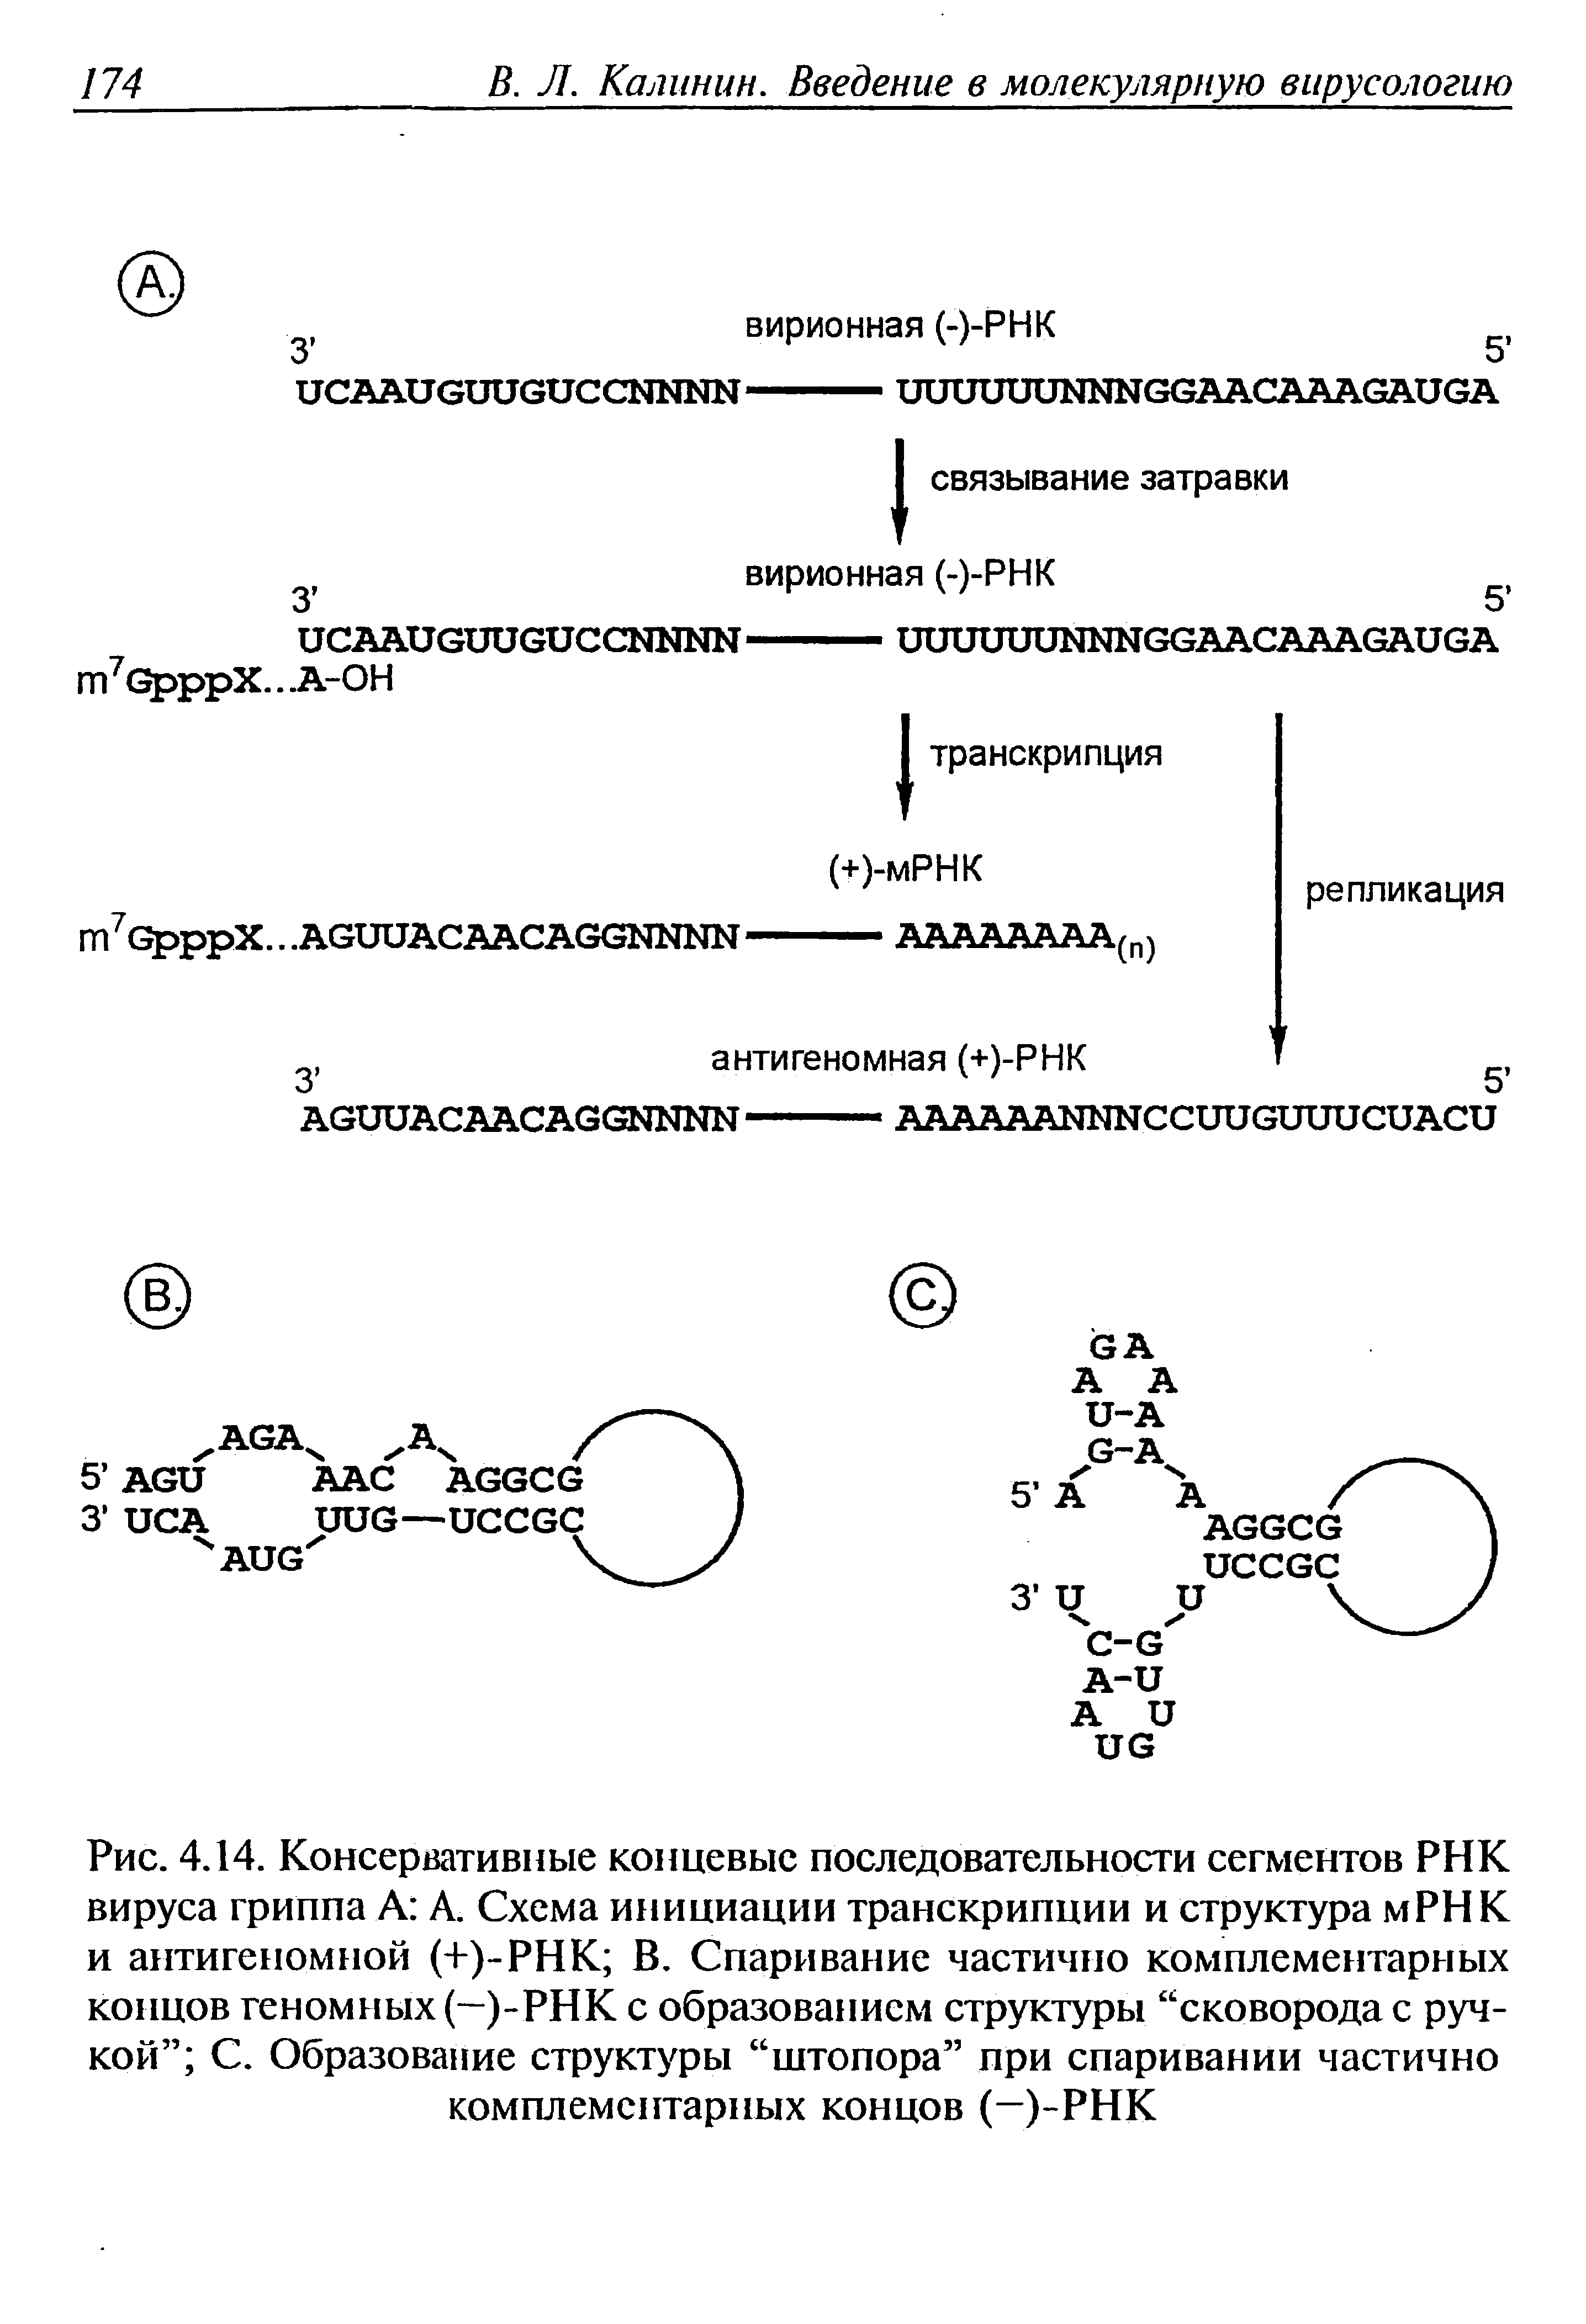 Рис. 4.14. Консервативные концевые последовательности сегментов РНК вируса гриппа А А. Схема инициации транскрипции и структура мРНК и антигеномной (+)-РНК В. Спаривание частично комплементарных концов геномных (-)-РНК с образованием структуры сковорода с ручкой С. Образование структуры штопора при спаривании частично комплементарных концов (-)-РНК...